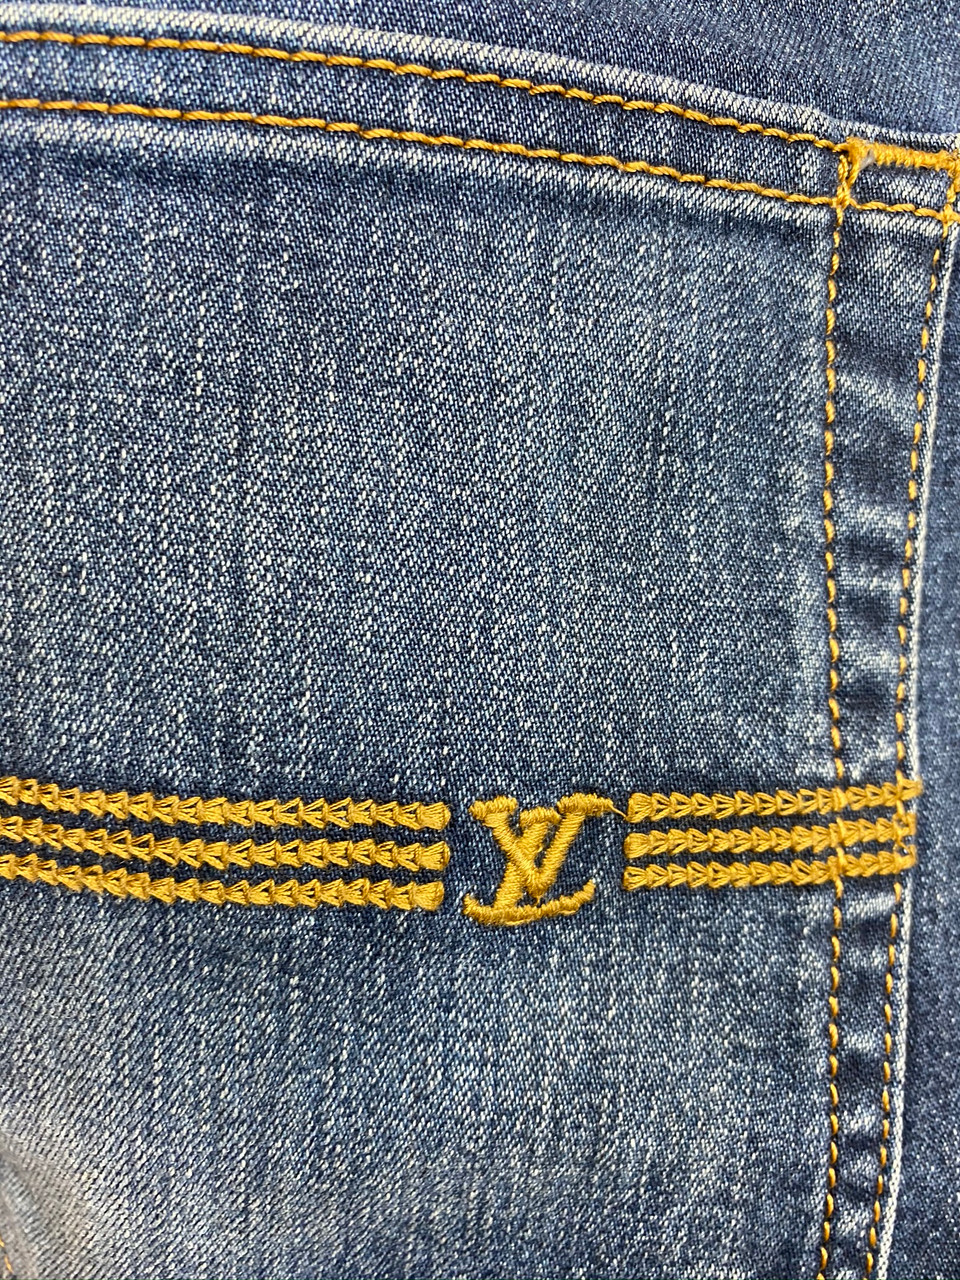 Louis Vuitton 2010s Gradient Wash Denim Jeans · INTO